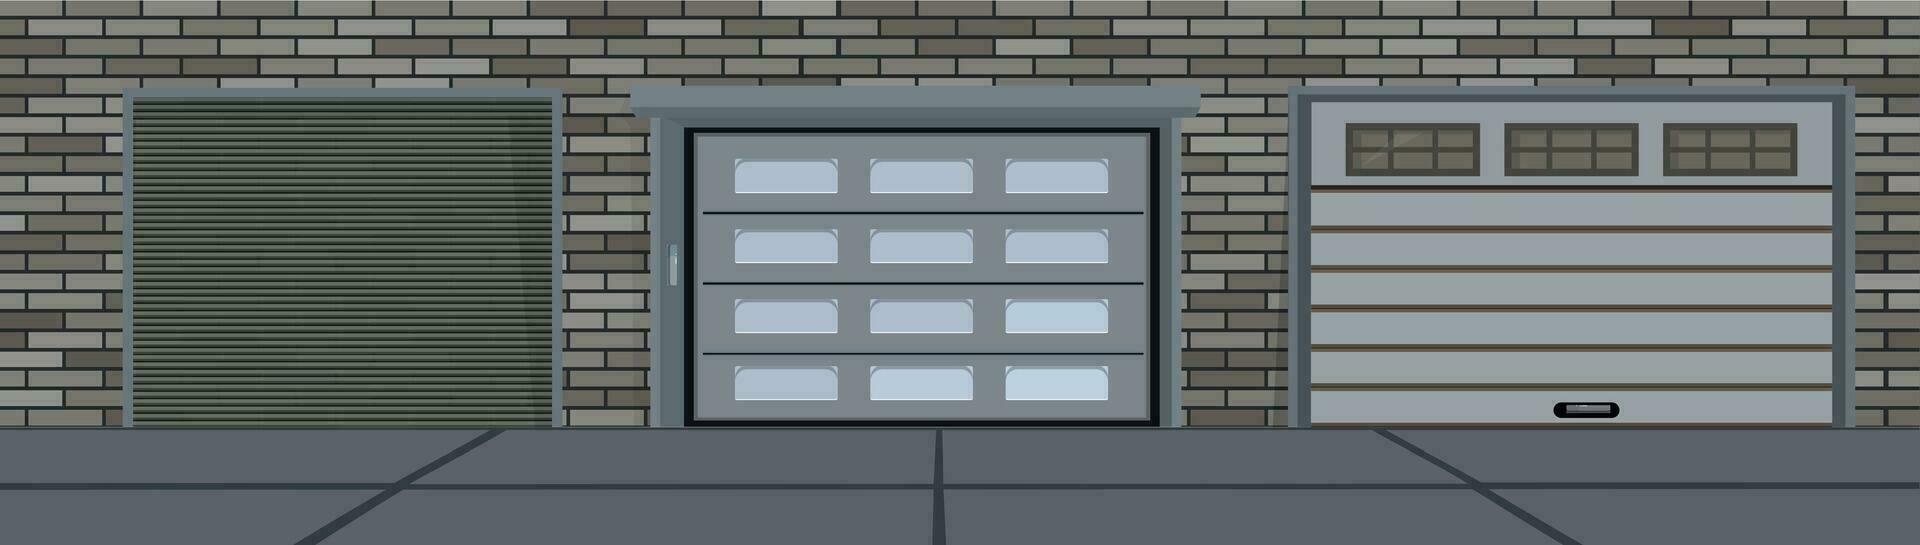 Garage Doors Realistic Composition vector